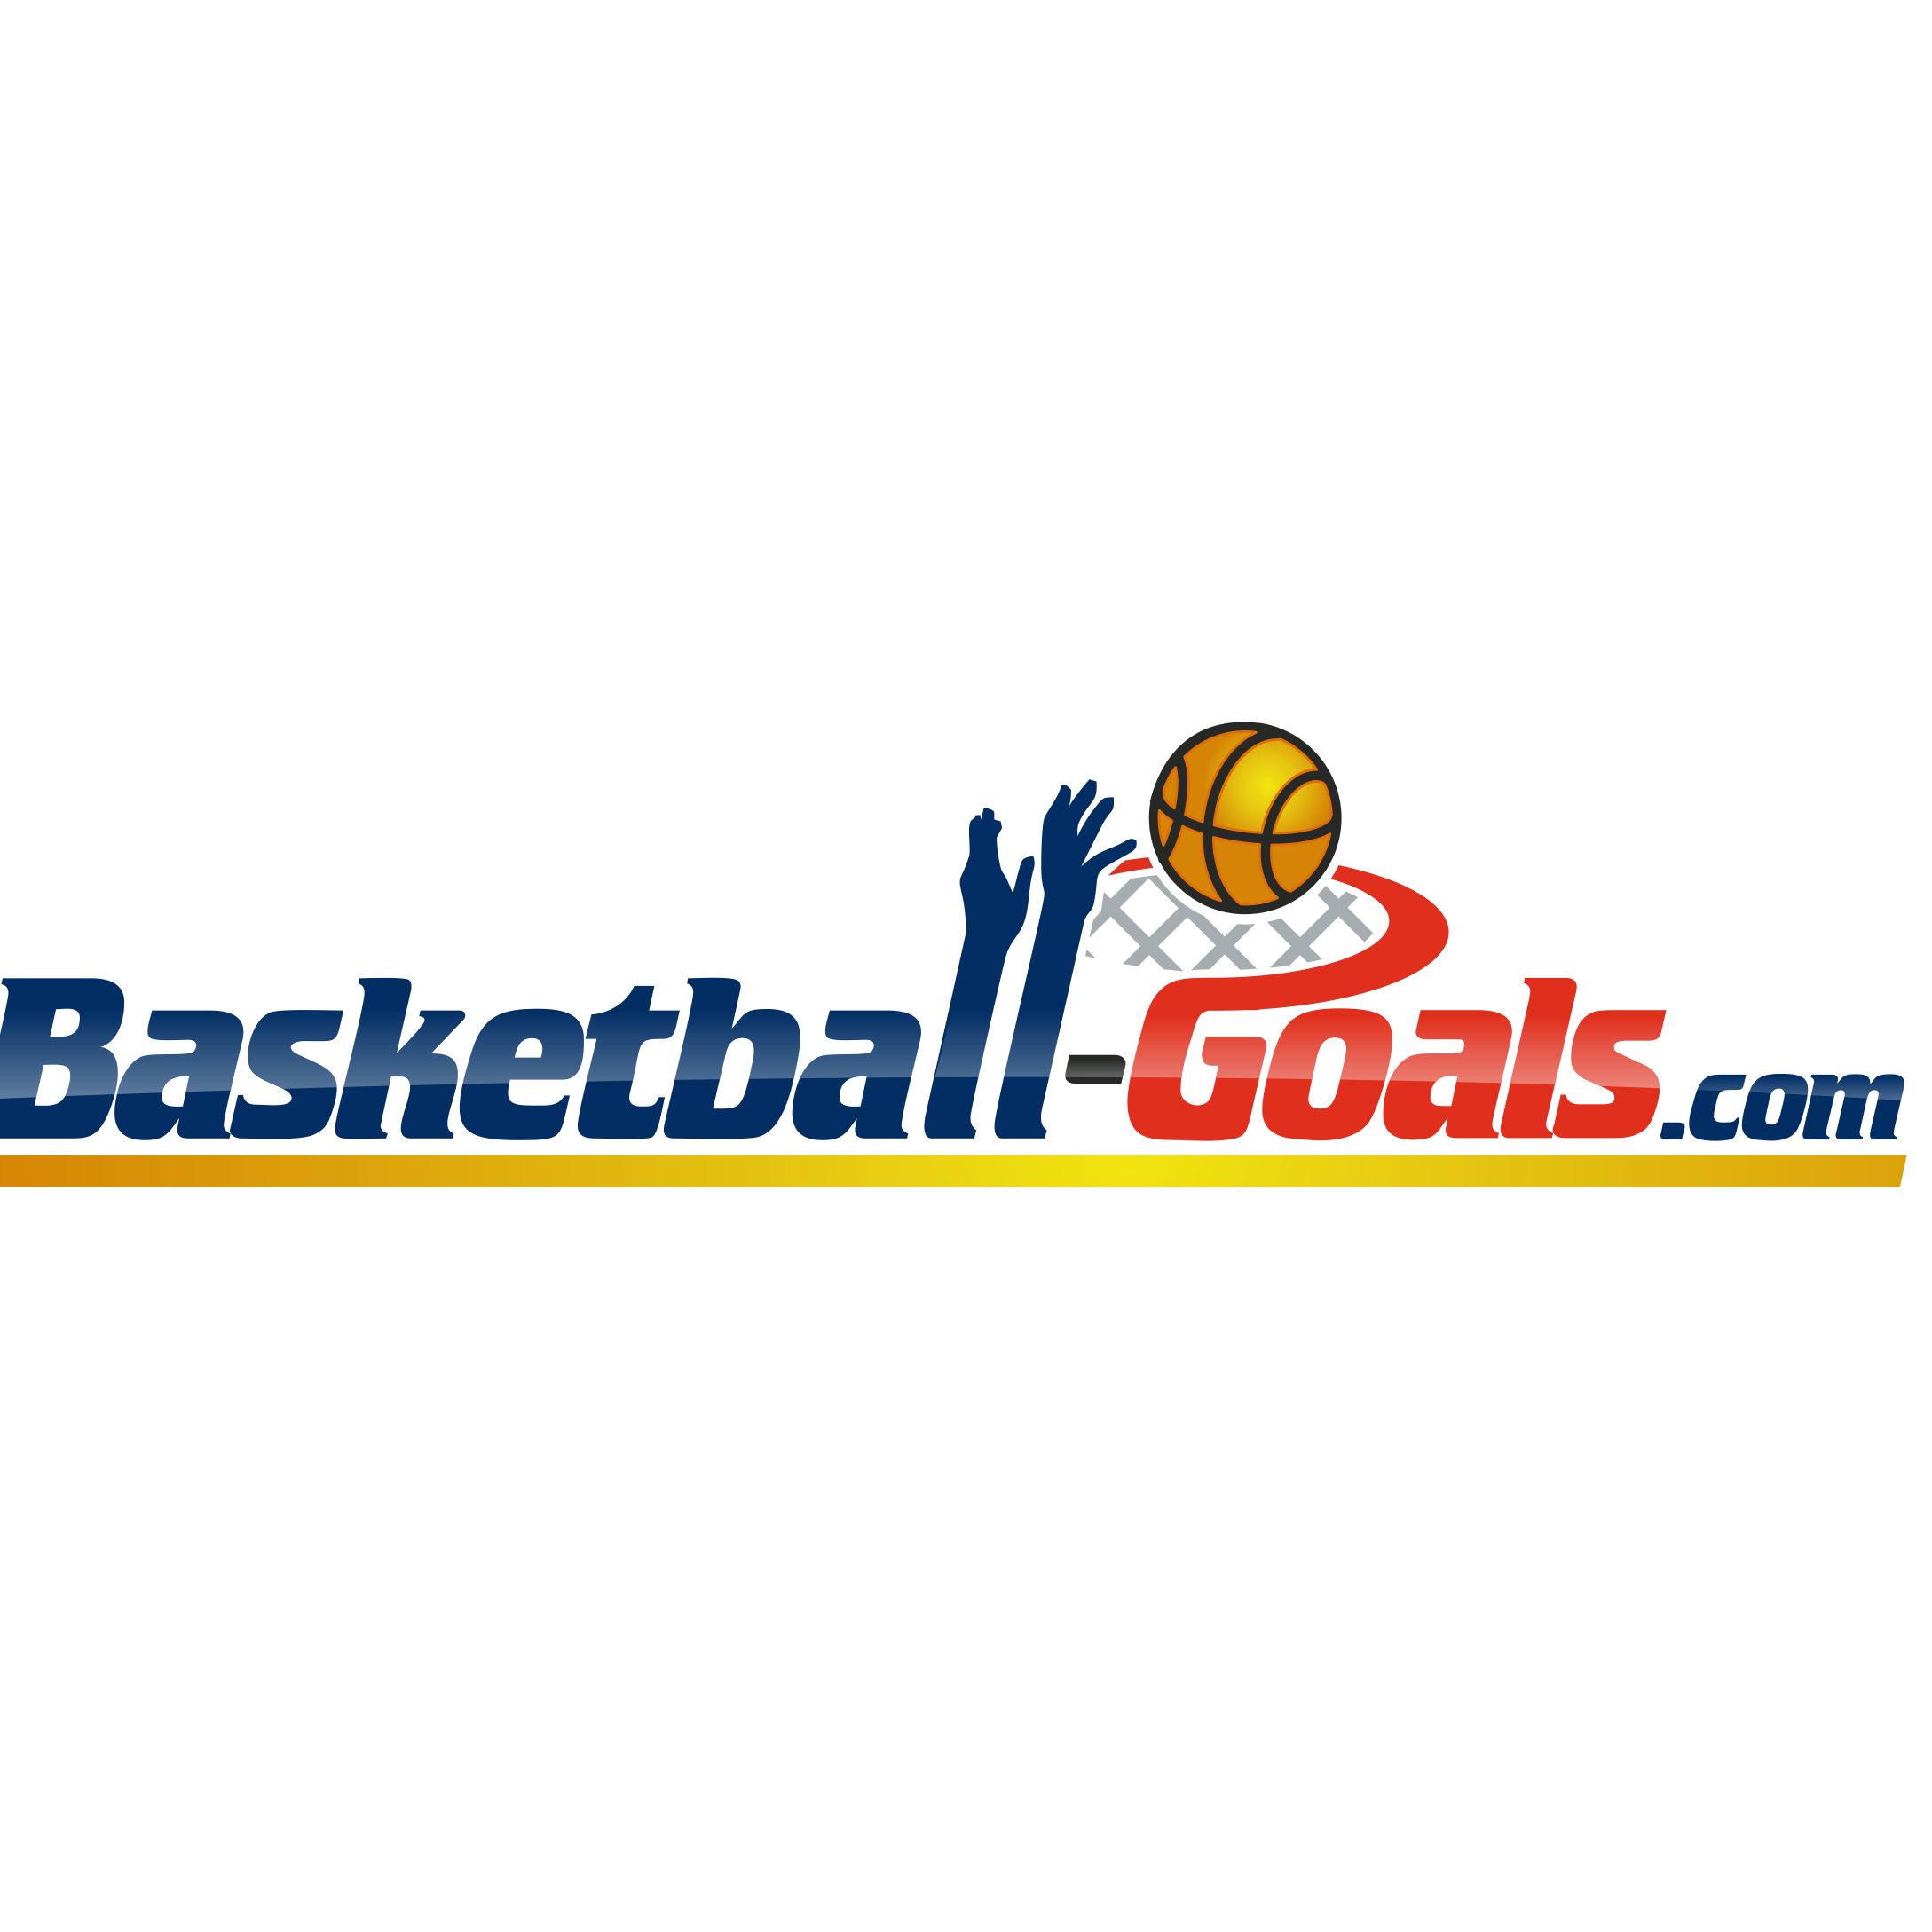 Basketball-goals.com Photo